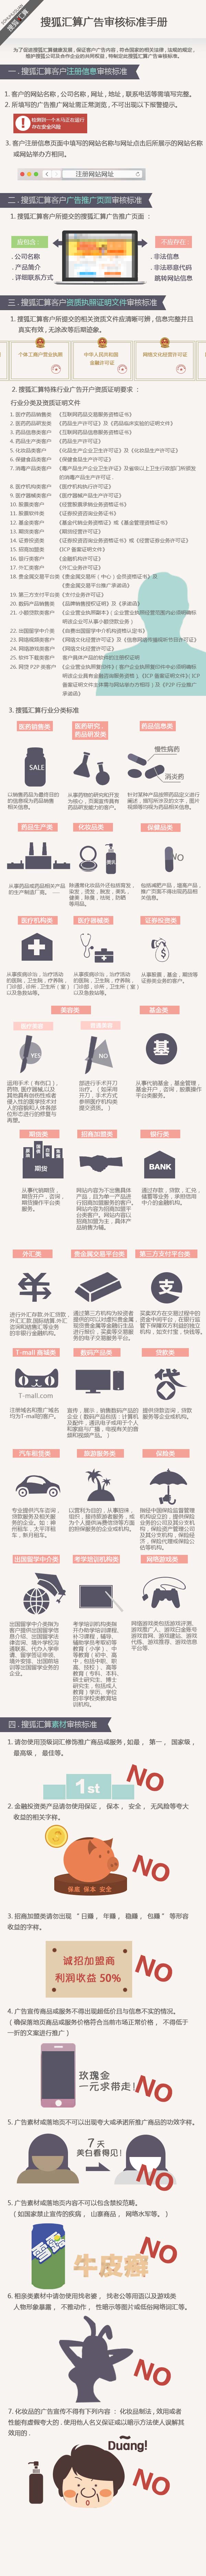 搜狐汇算广告投放教程插图3